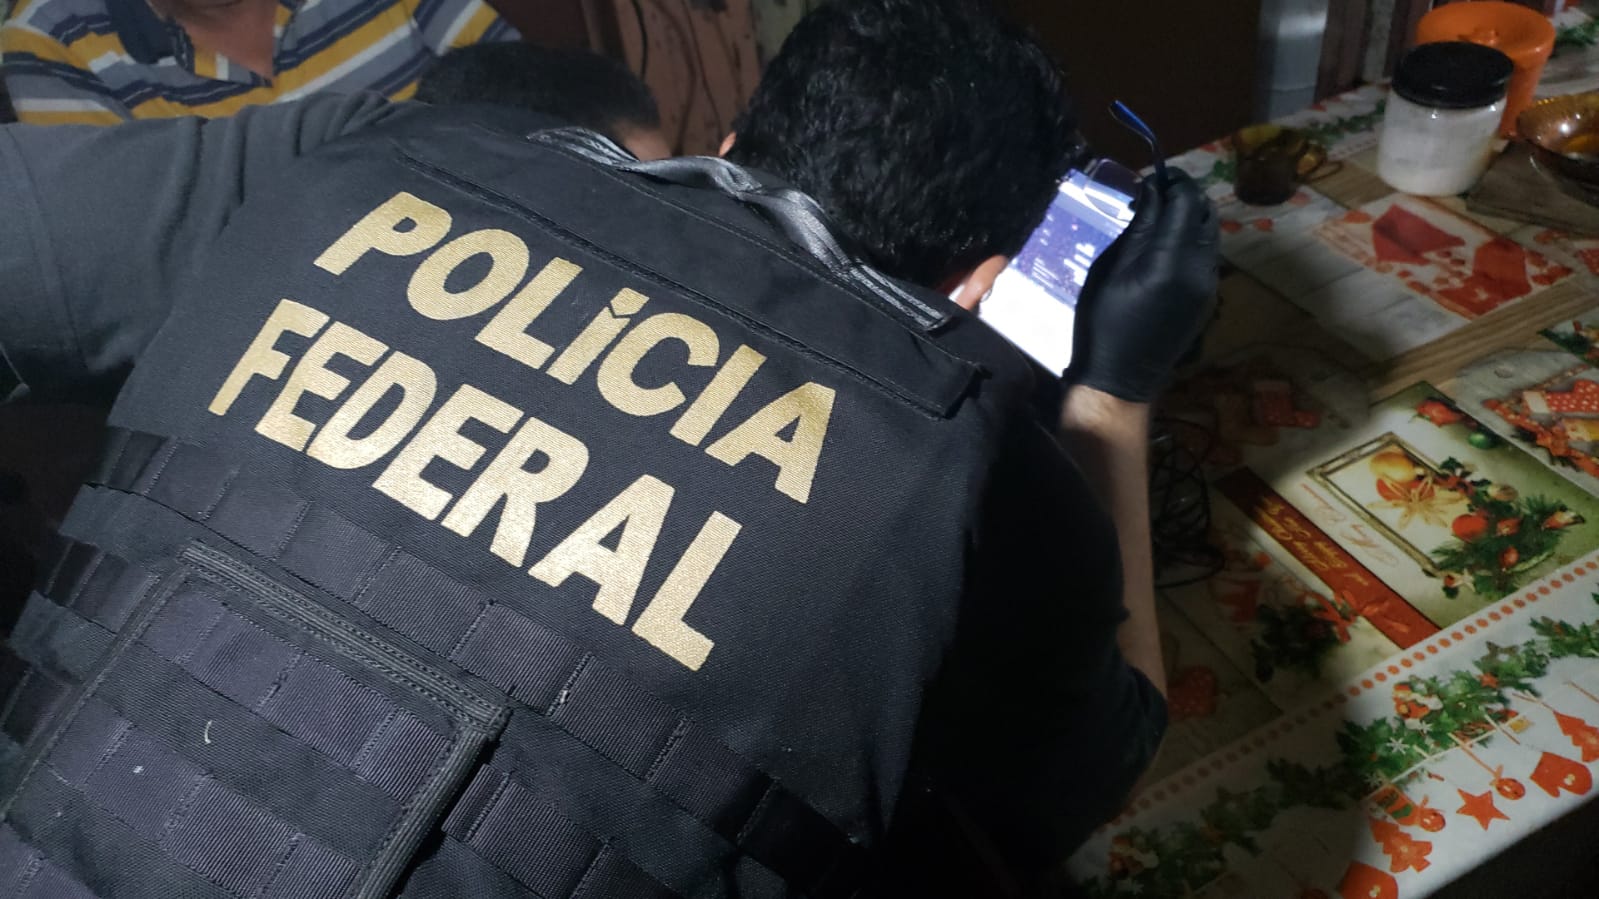 Polícia Federal deflagra a operação “Bona Dea” no Pará